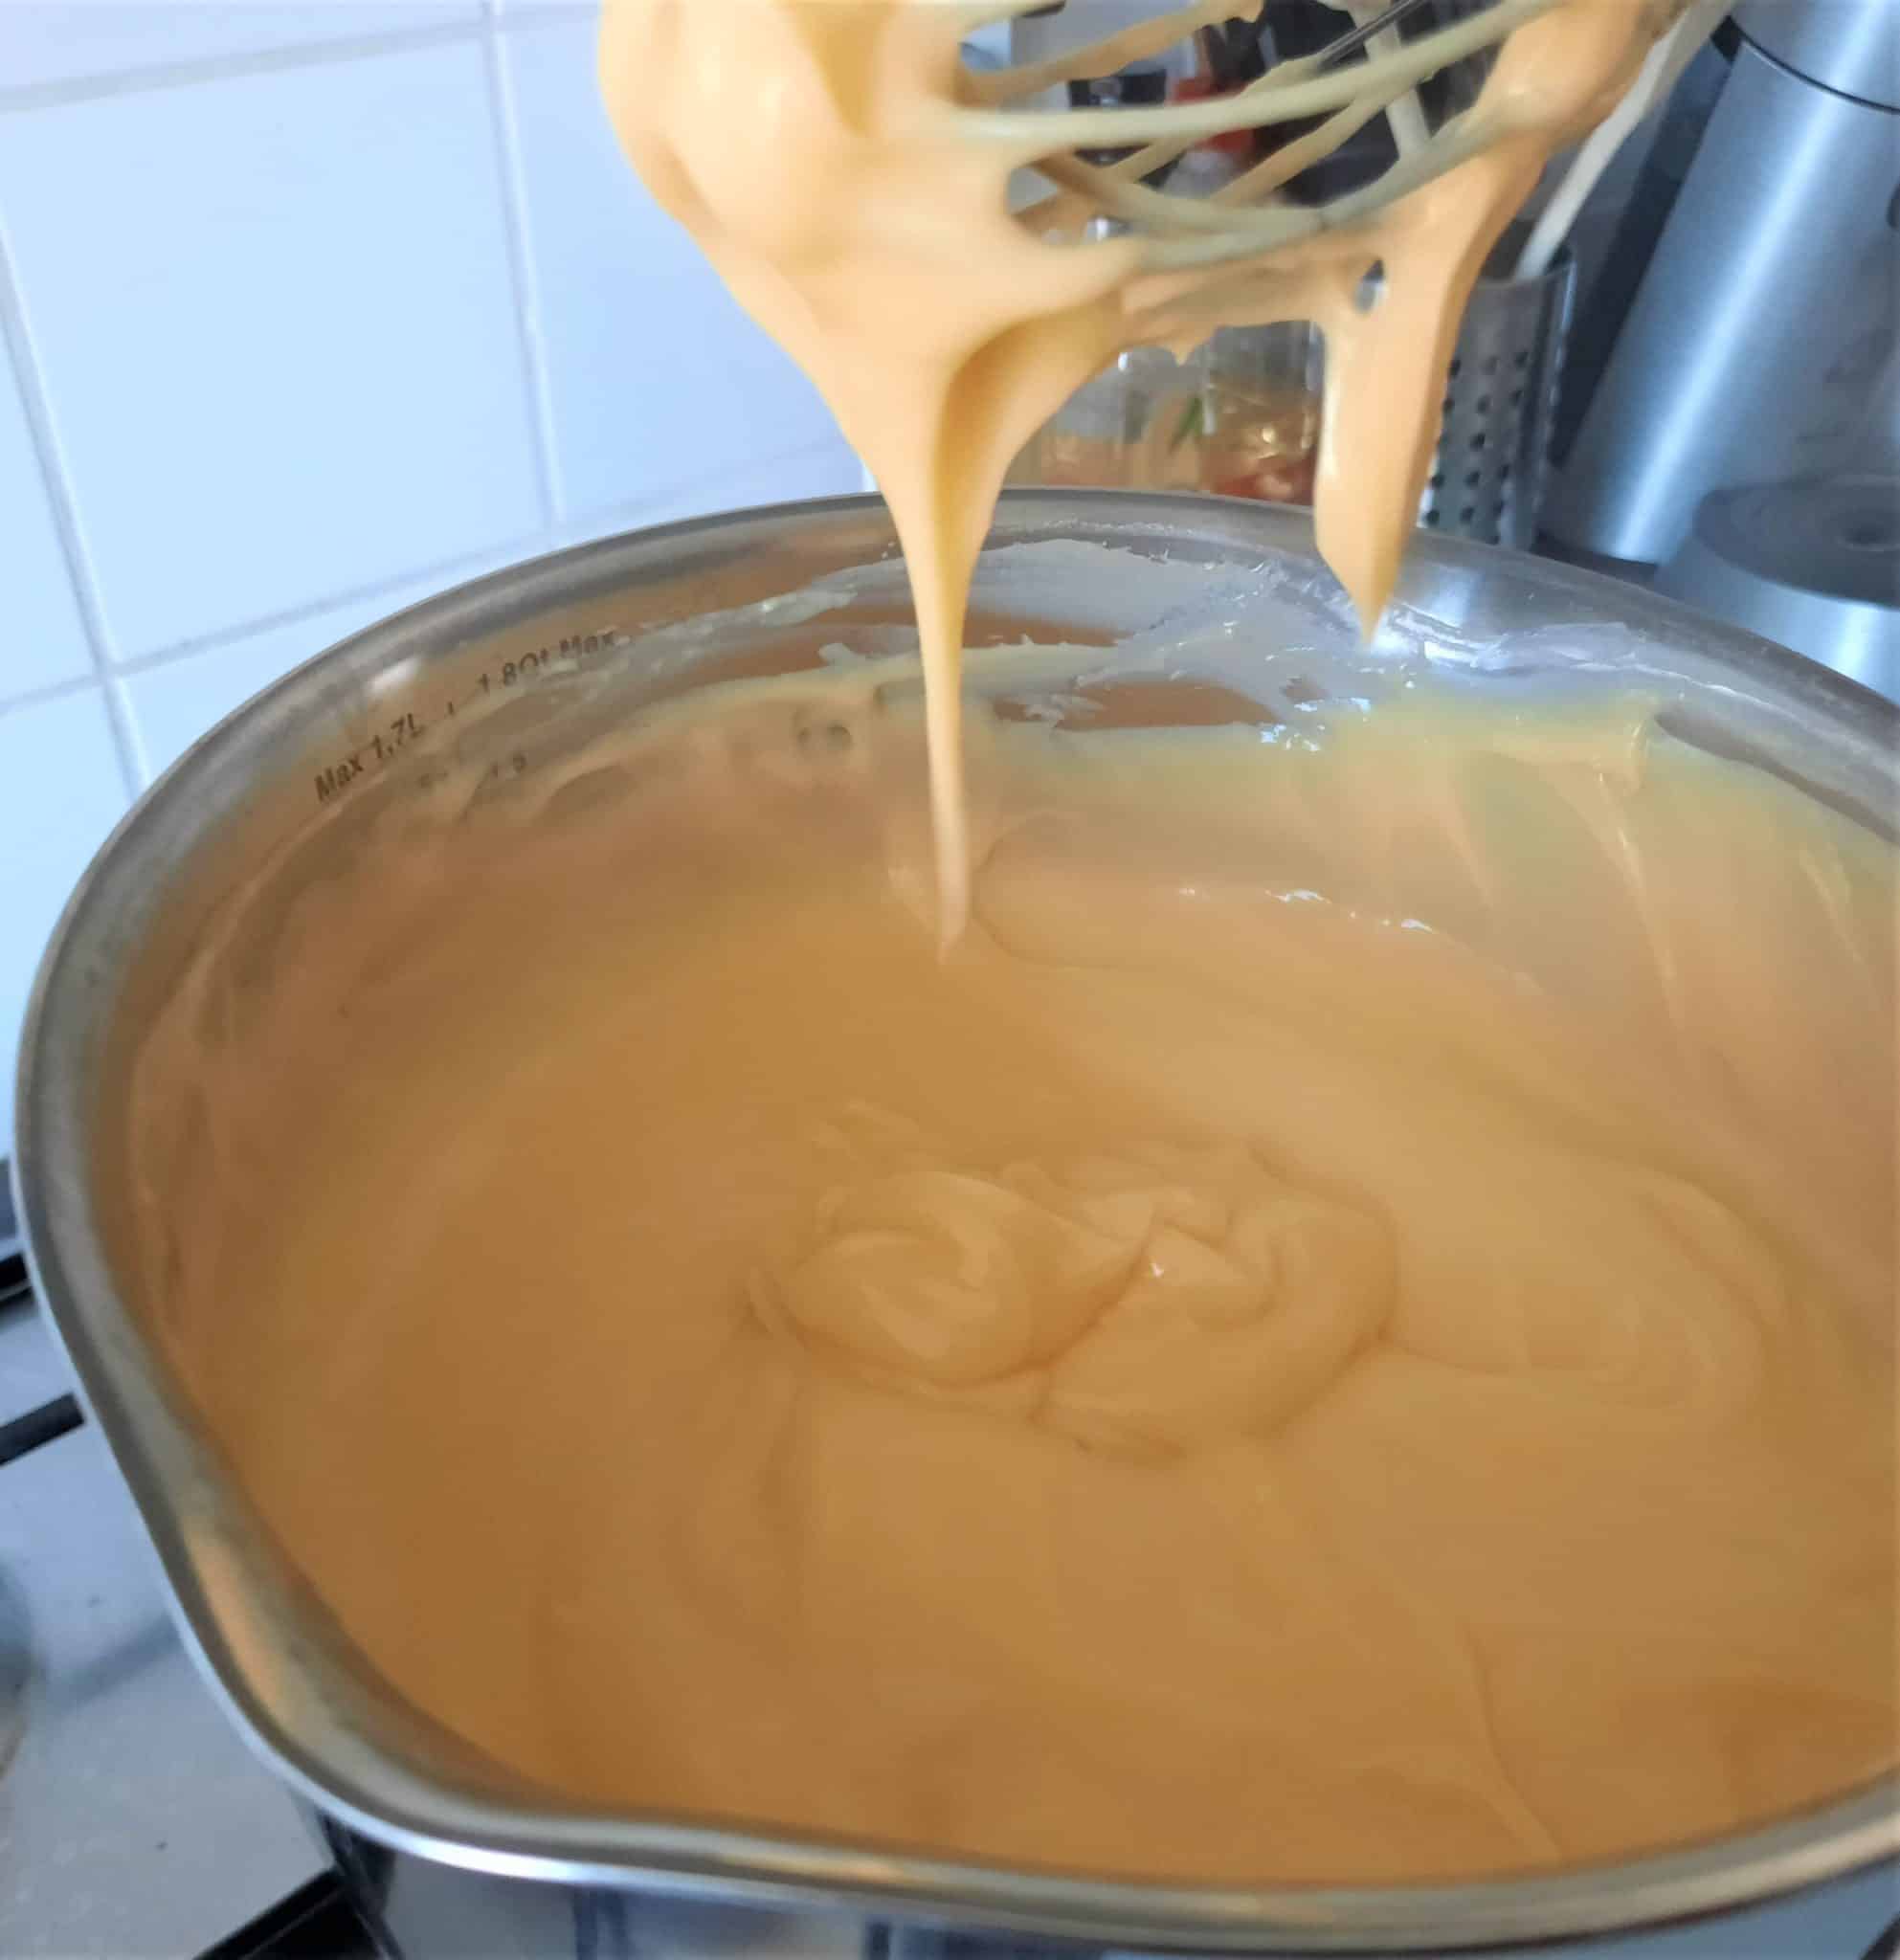 Recipe: Creme Patisserie / Pastry Cream